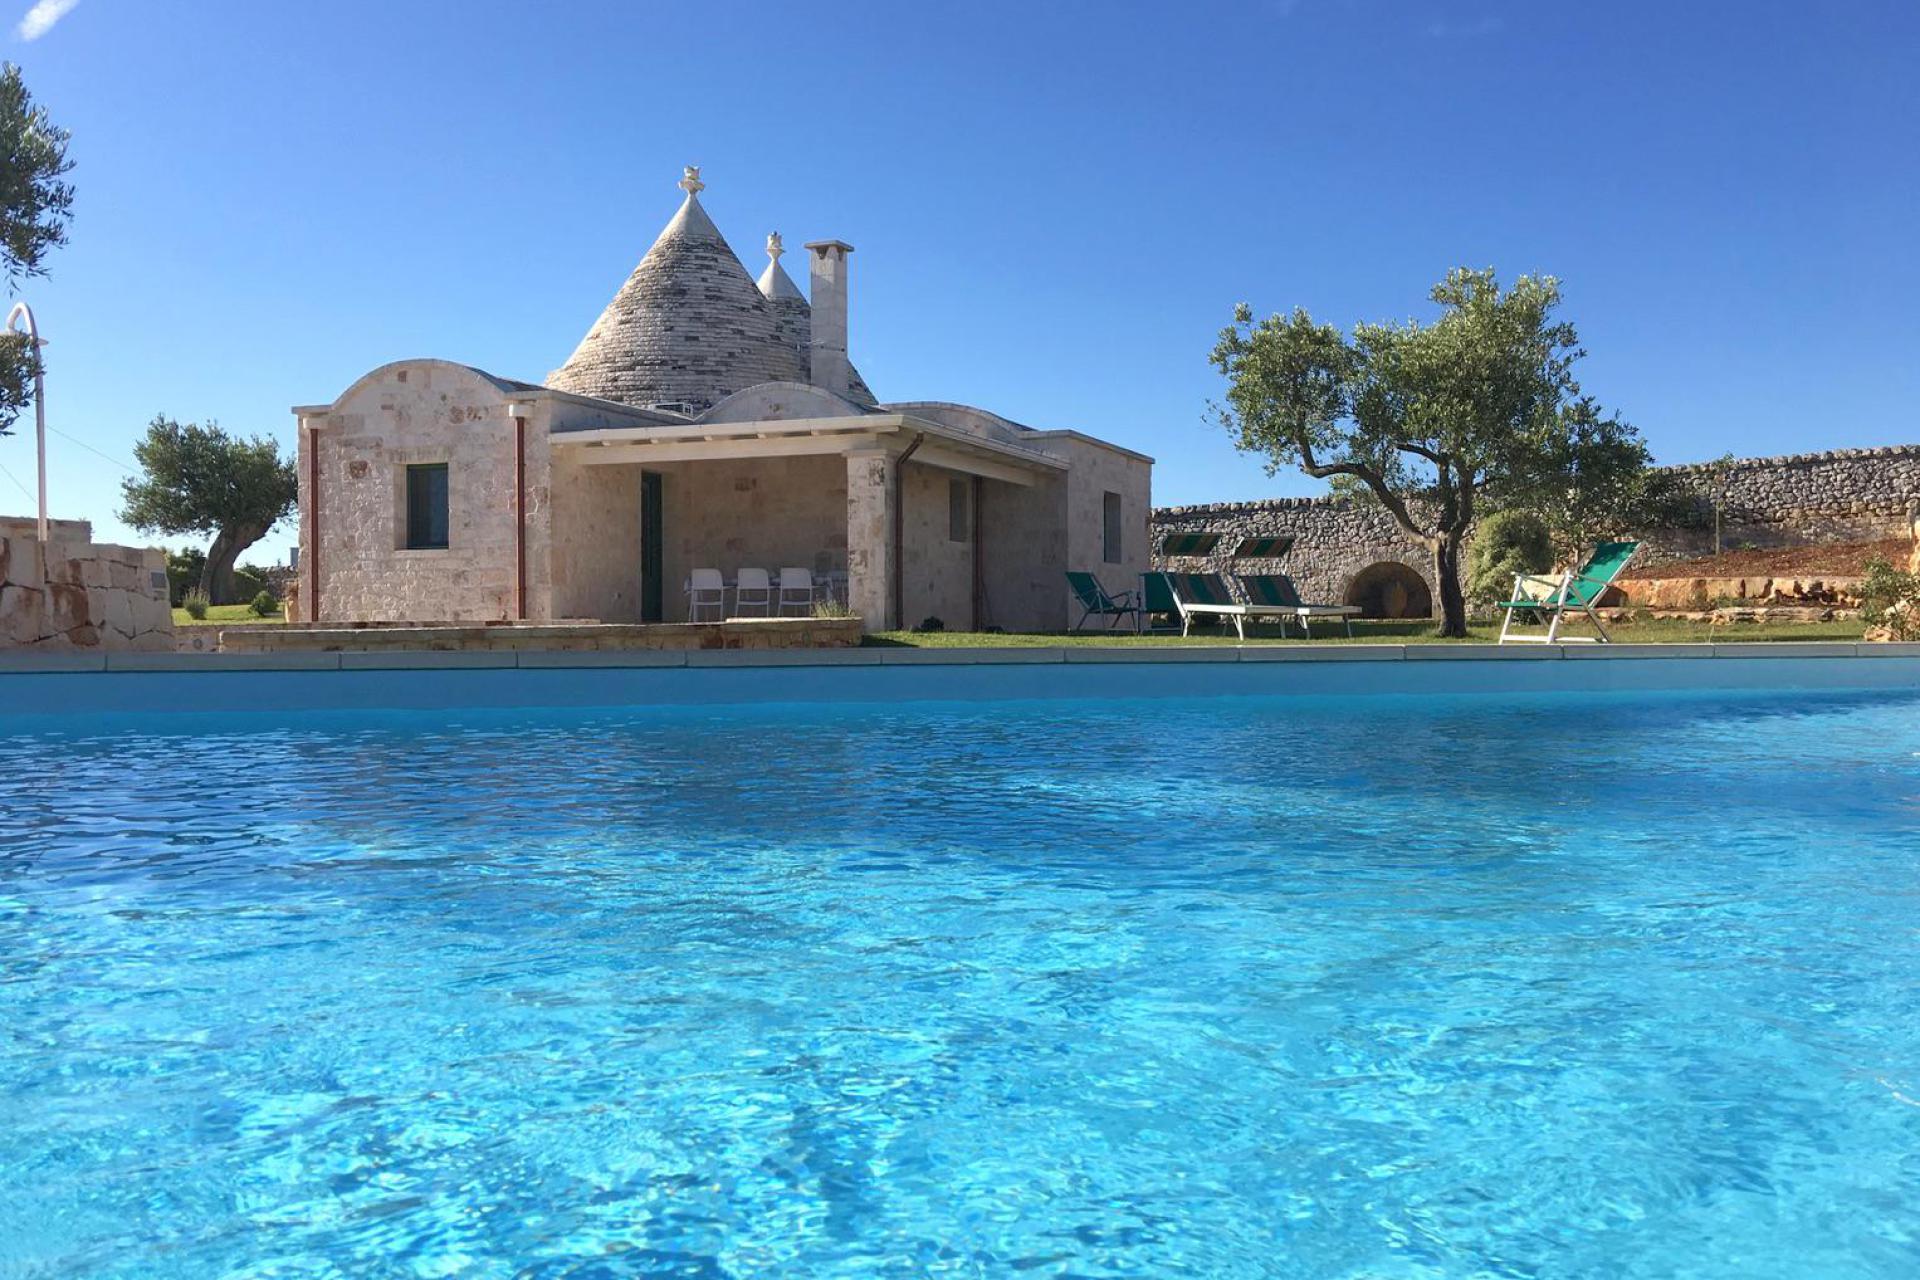 Mooie trullo met eigen zwembad in olijfgaard